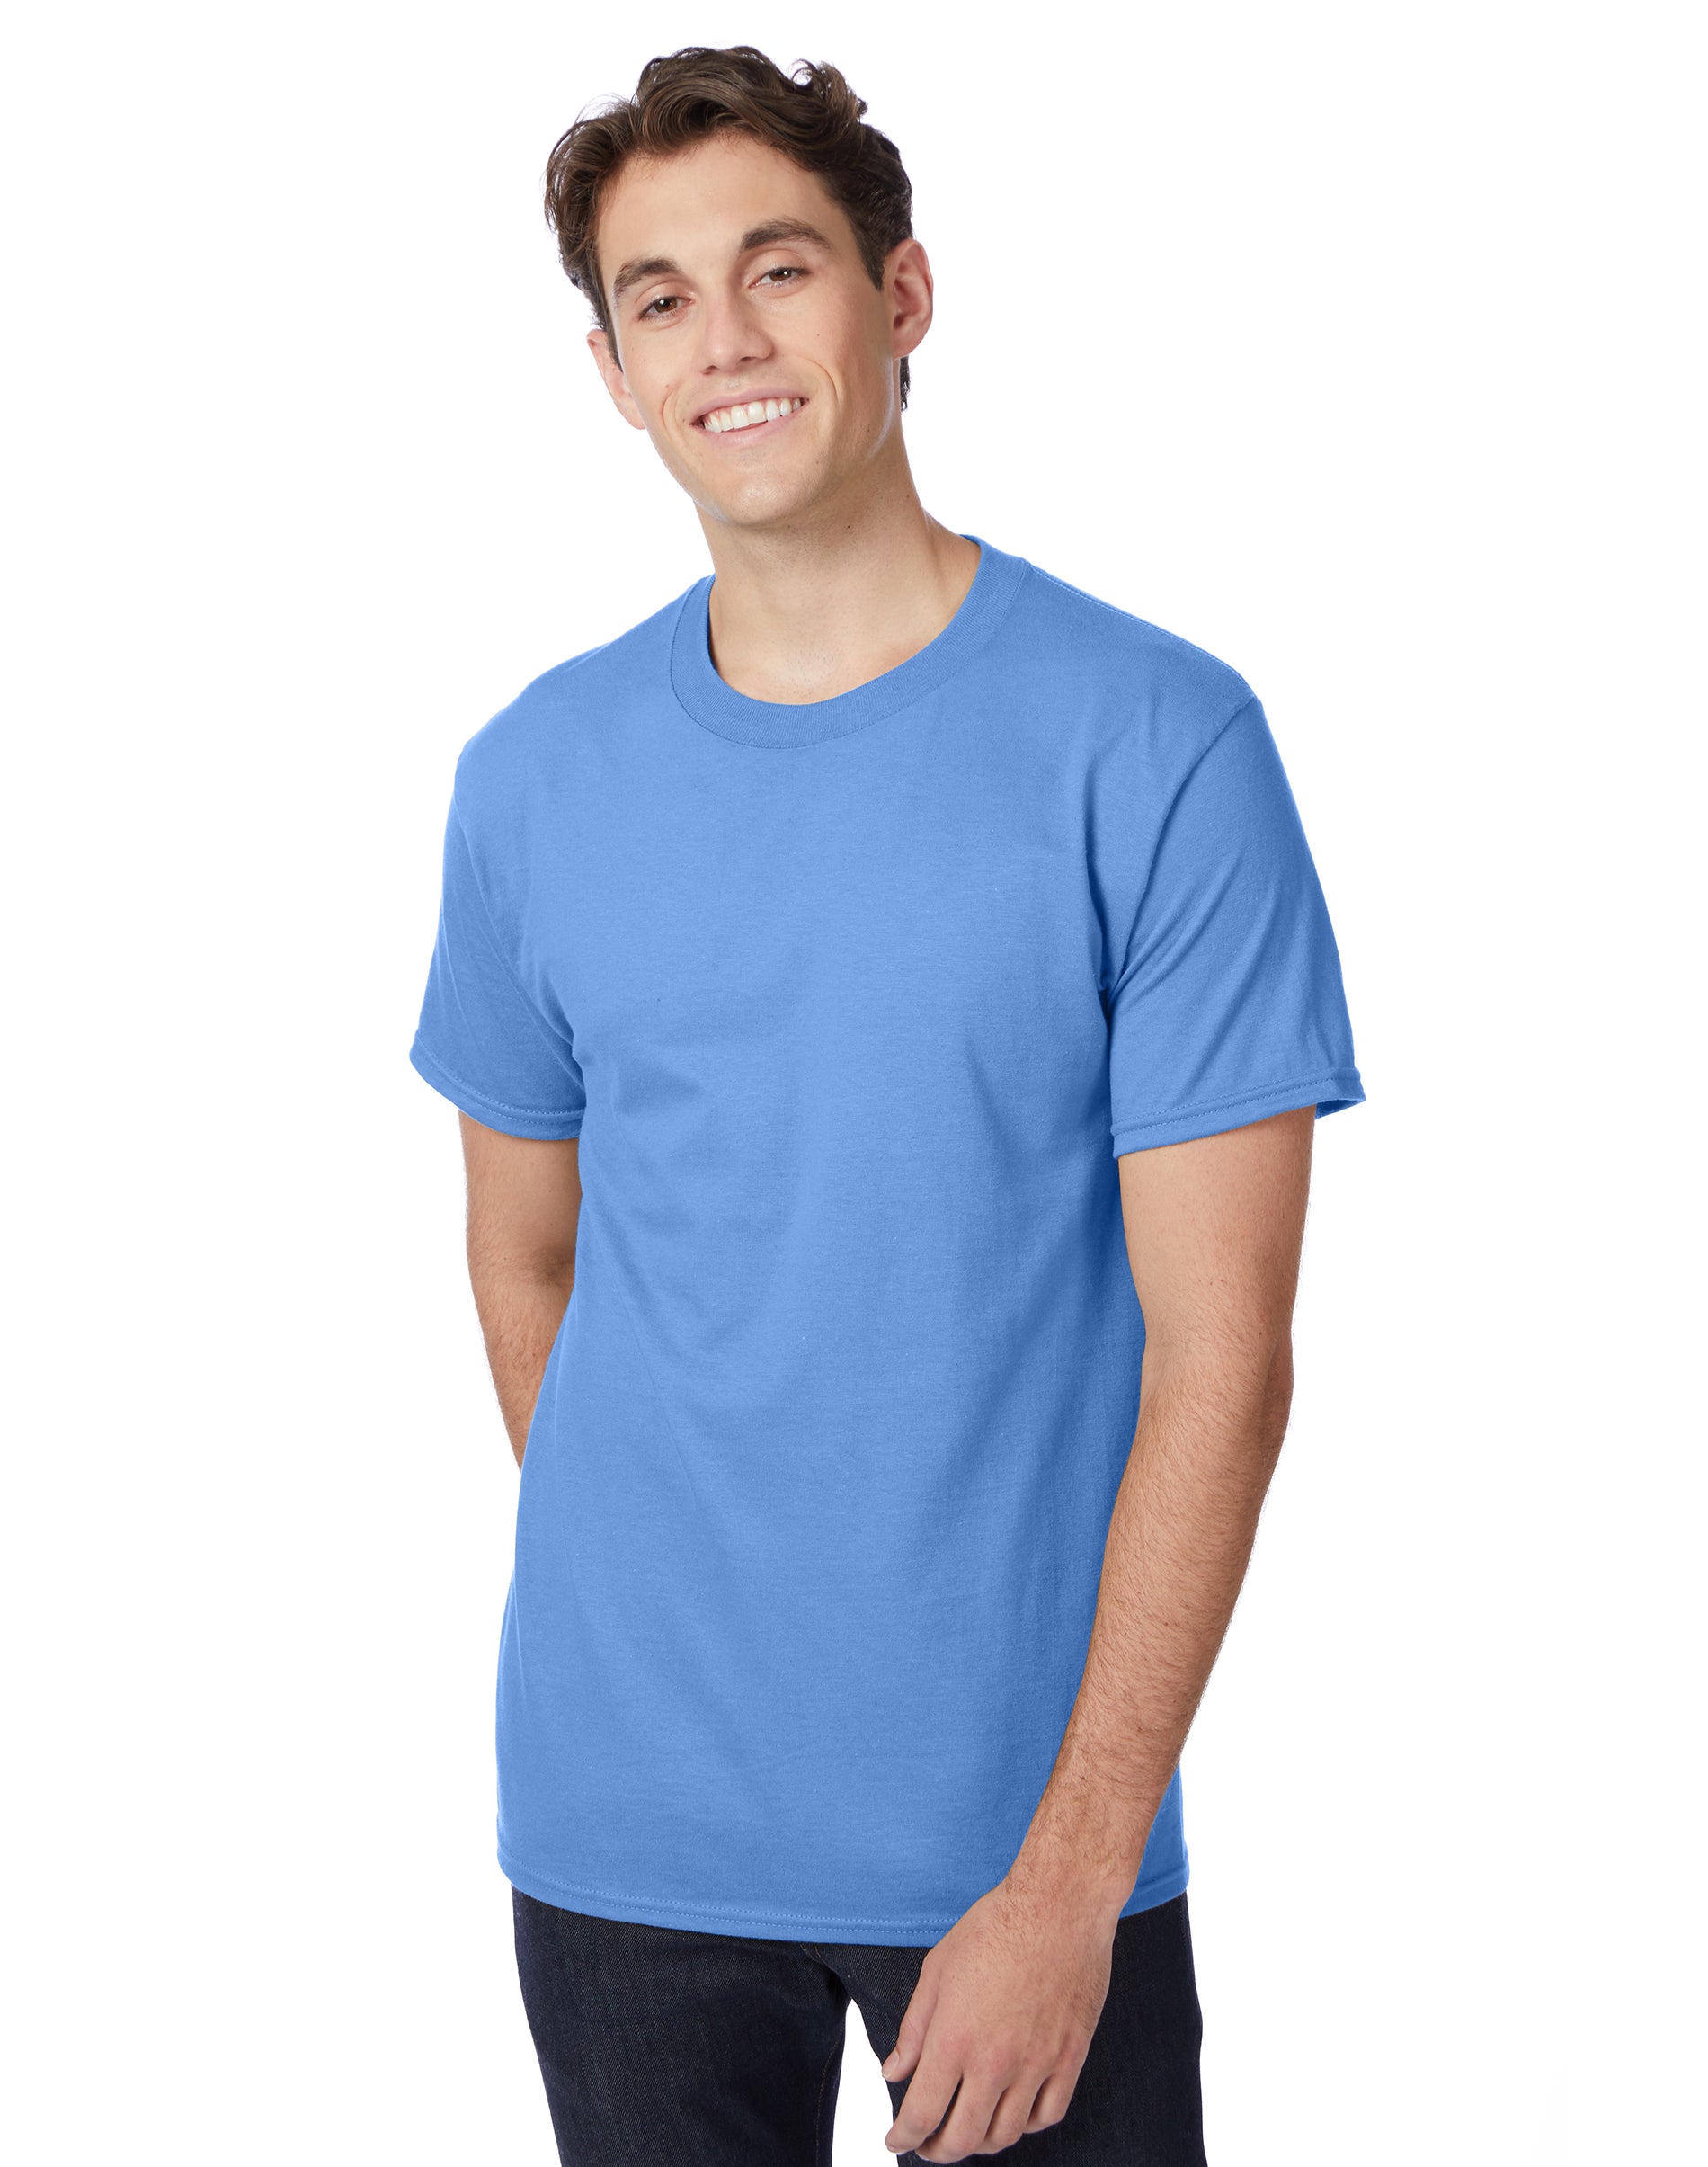 Hanes Beefy-T Unisex Short Sleeve T-Shirt Carolina Blue S - image 1 of 4